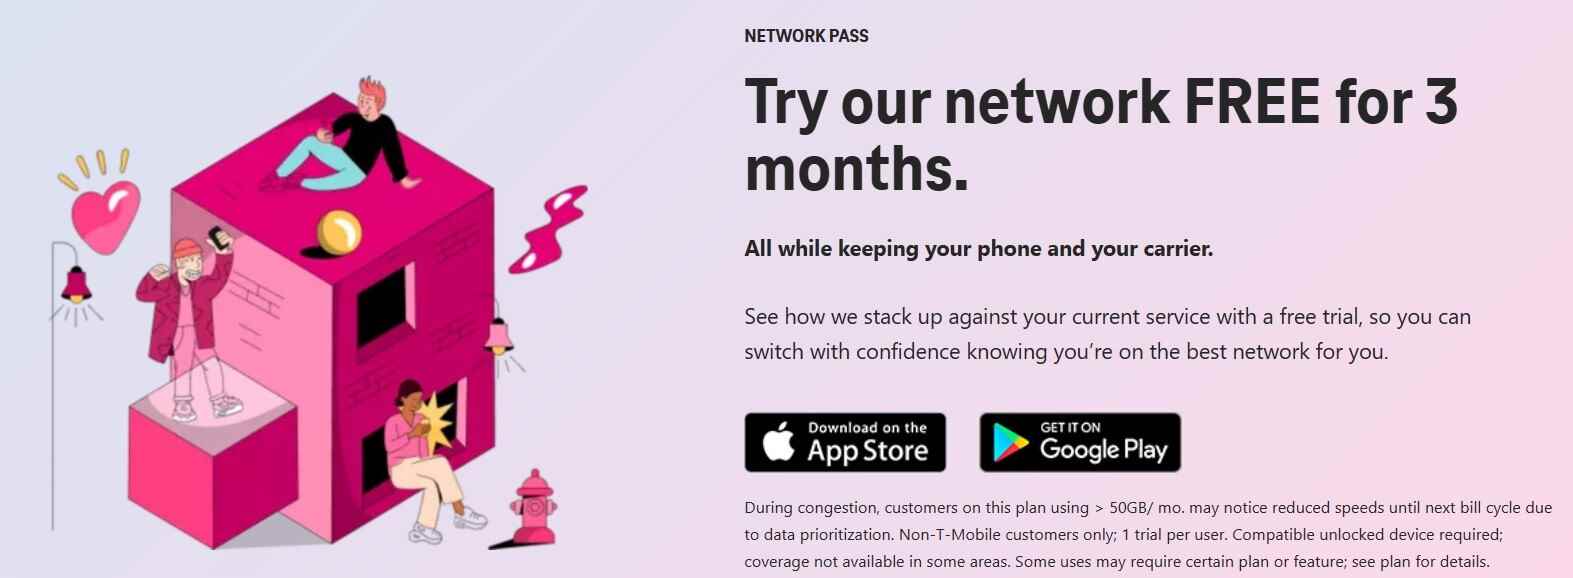 T-Mobile'ın Ağ Geçişi, denemeniz için size üç aya kadar ücretsiz sınırsız veri sunar - Cricket, Visible, Verizon ve T-Mobile dahil olmak üzere çeşitli kablosuz şirketler ücretsiz denemeler sunar